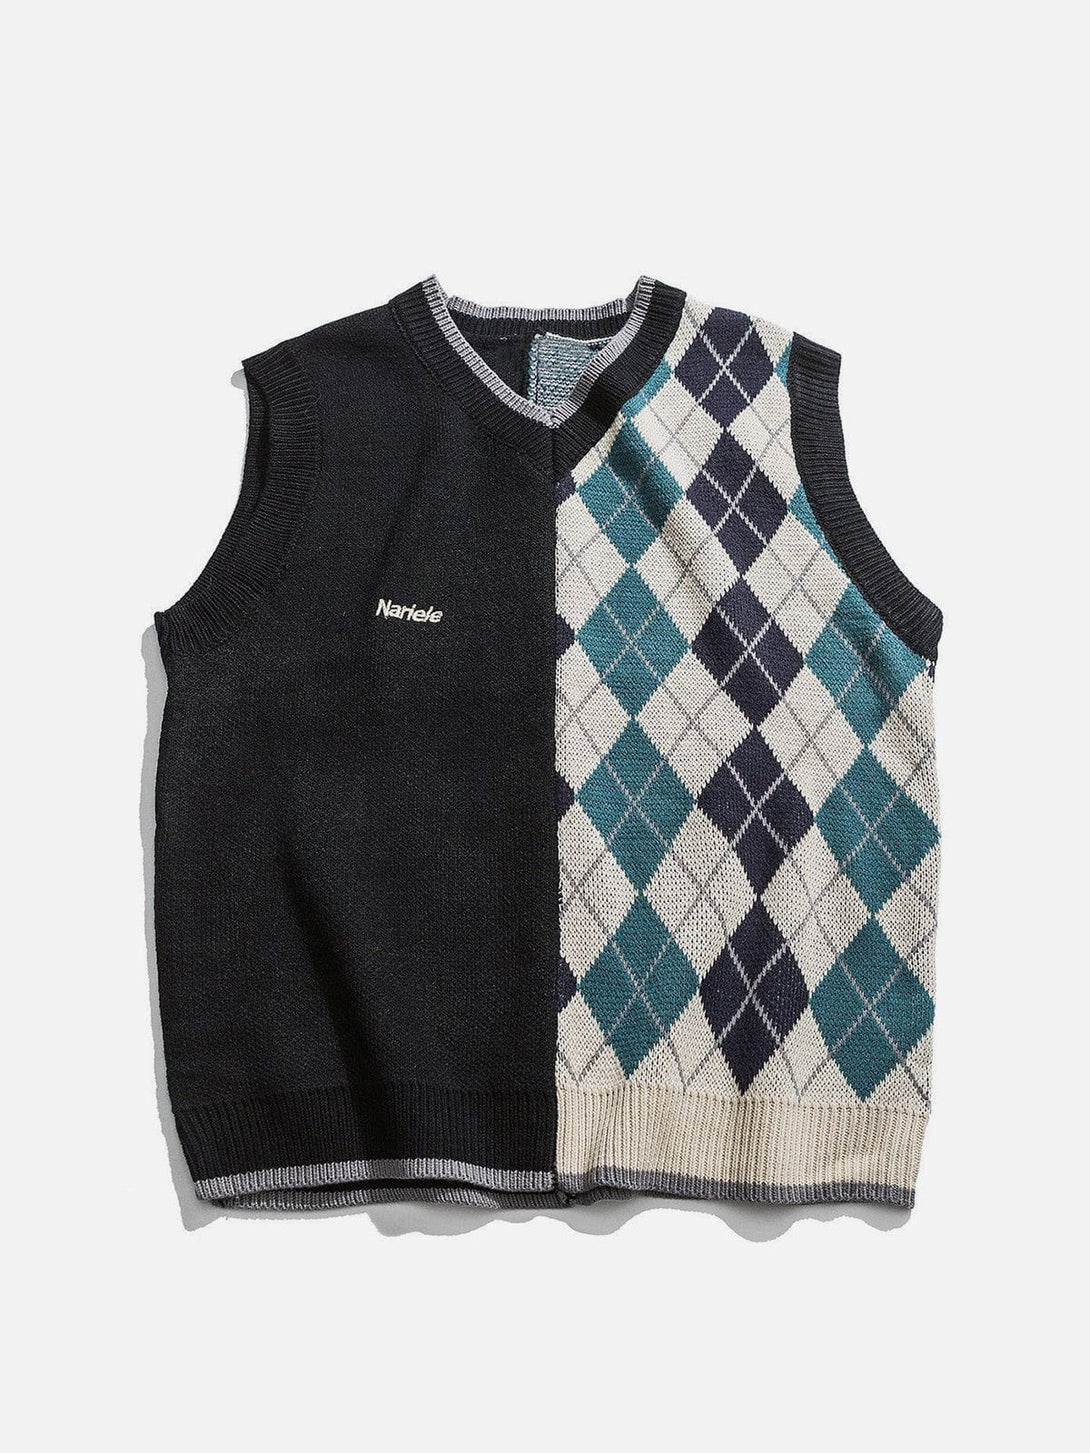 Aelfric Eden Vintage Stitching Diamond Pattern Sweater Vest – Aelfric eden